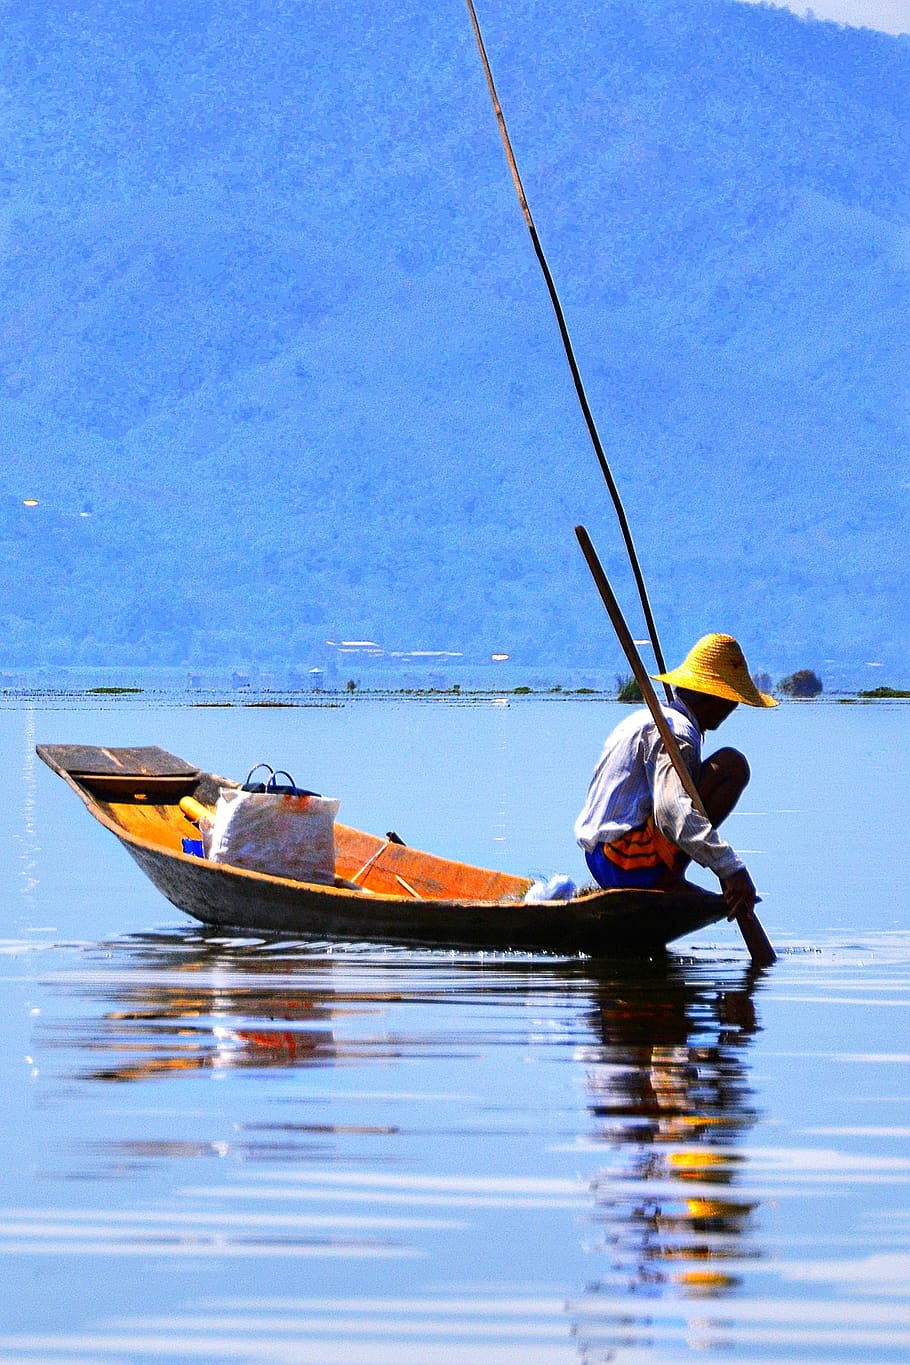 memancing, perahu, kecil, kayu, air, nelayan, inle, danau, myanmar, burma